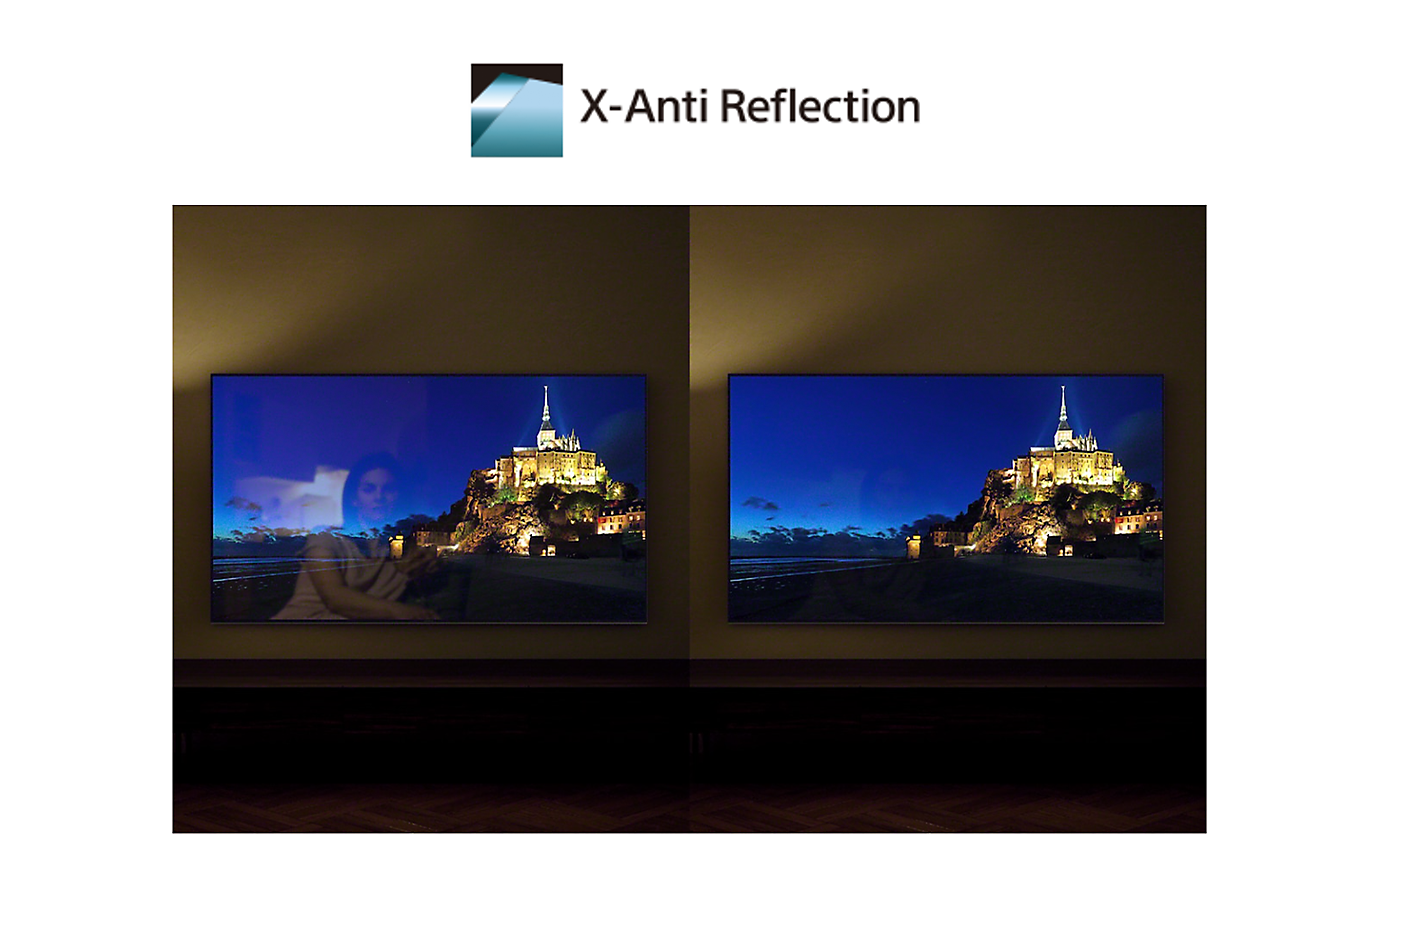 Vergleich der Bildschirme mit und ohne X-Anti Reflection